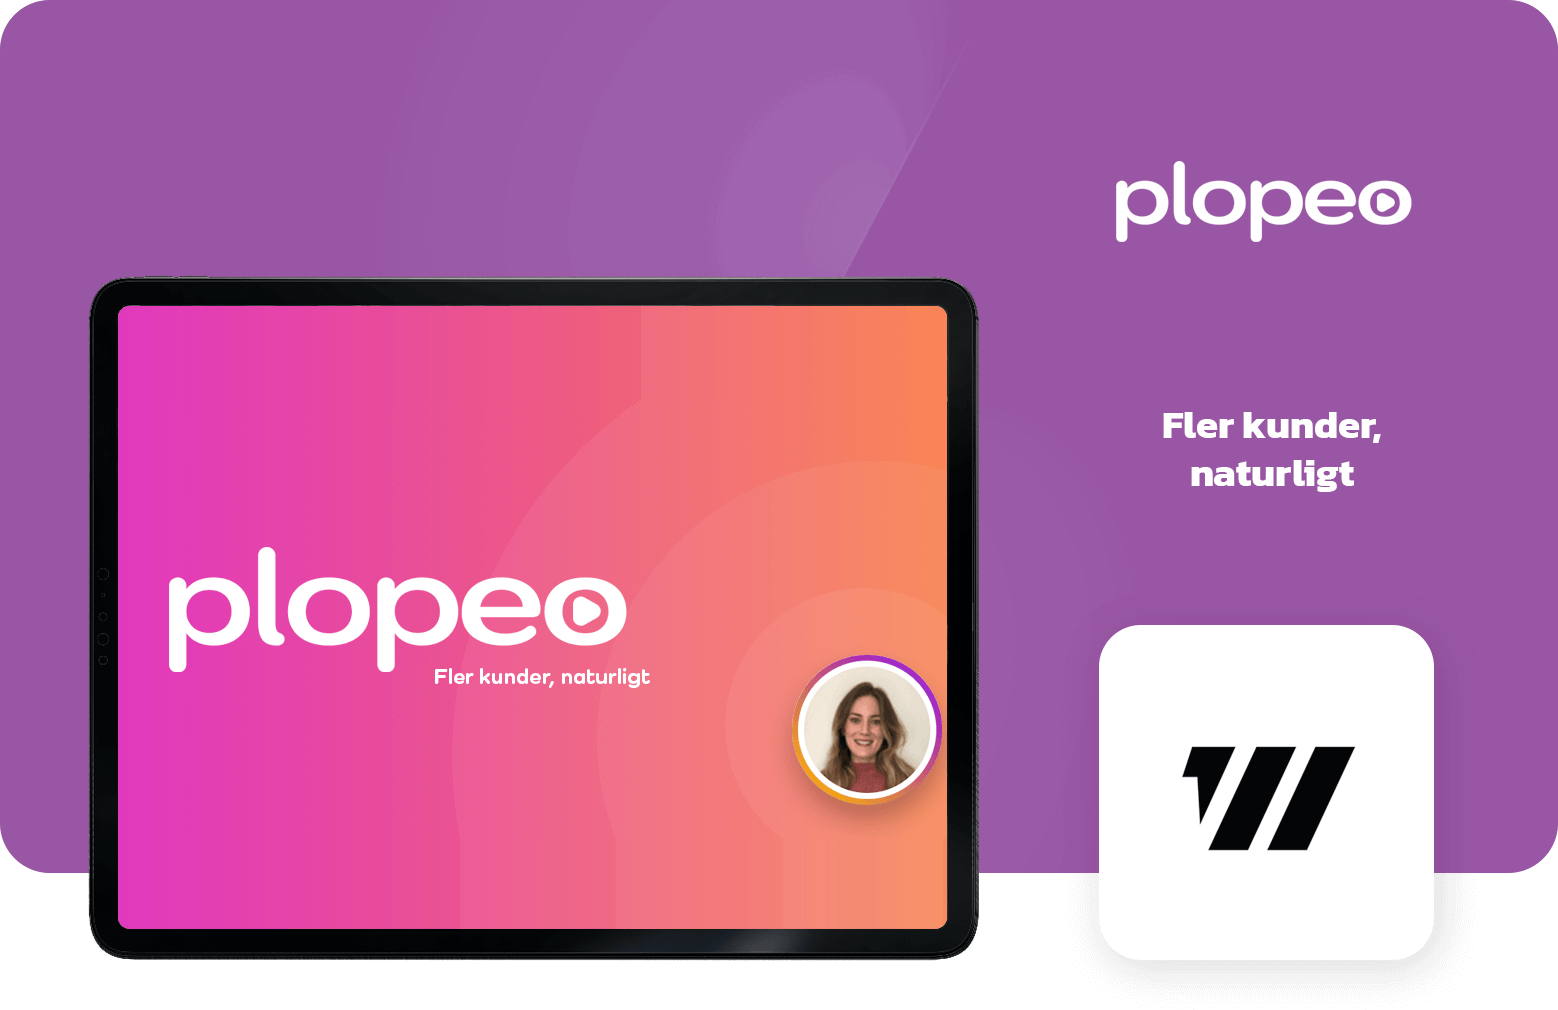 Fler kunder naturligt - Plopeo, en videotjänst för naturliga kundrelationer